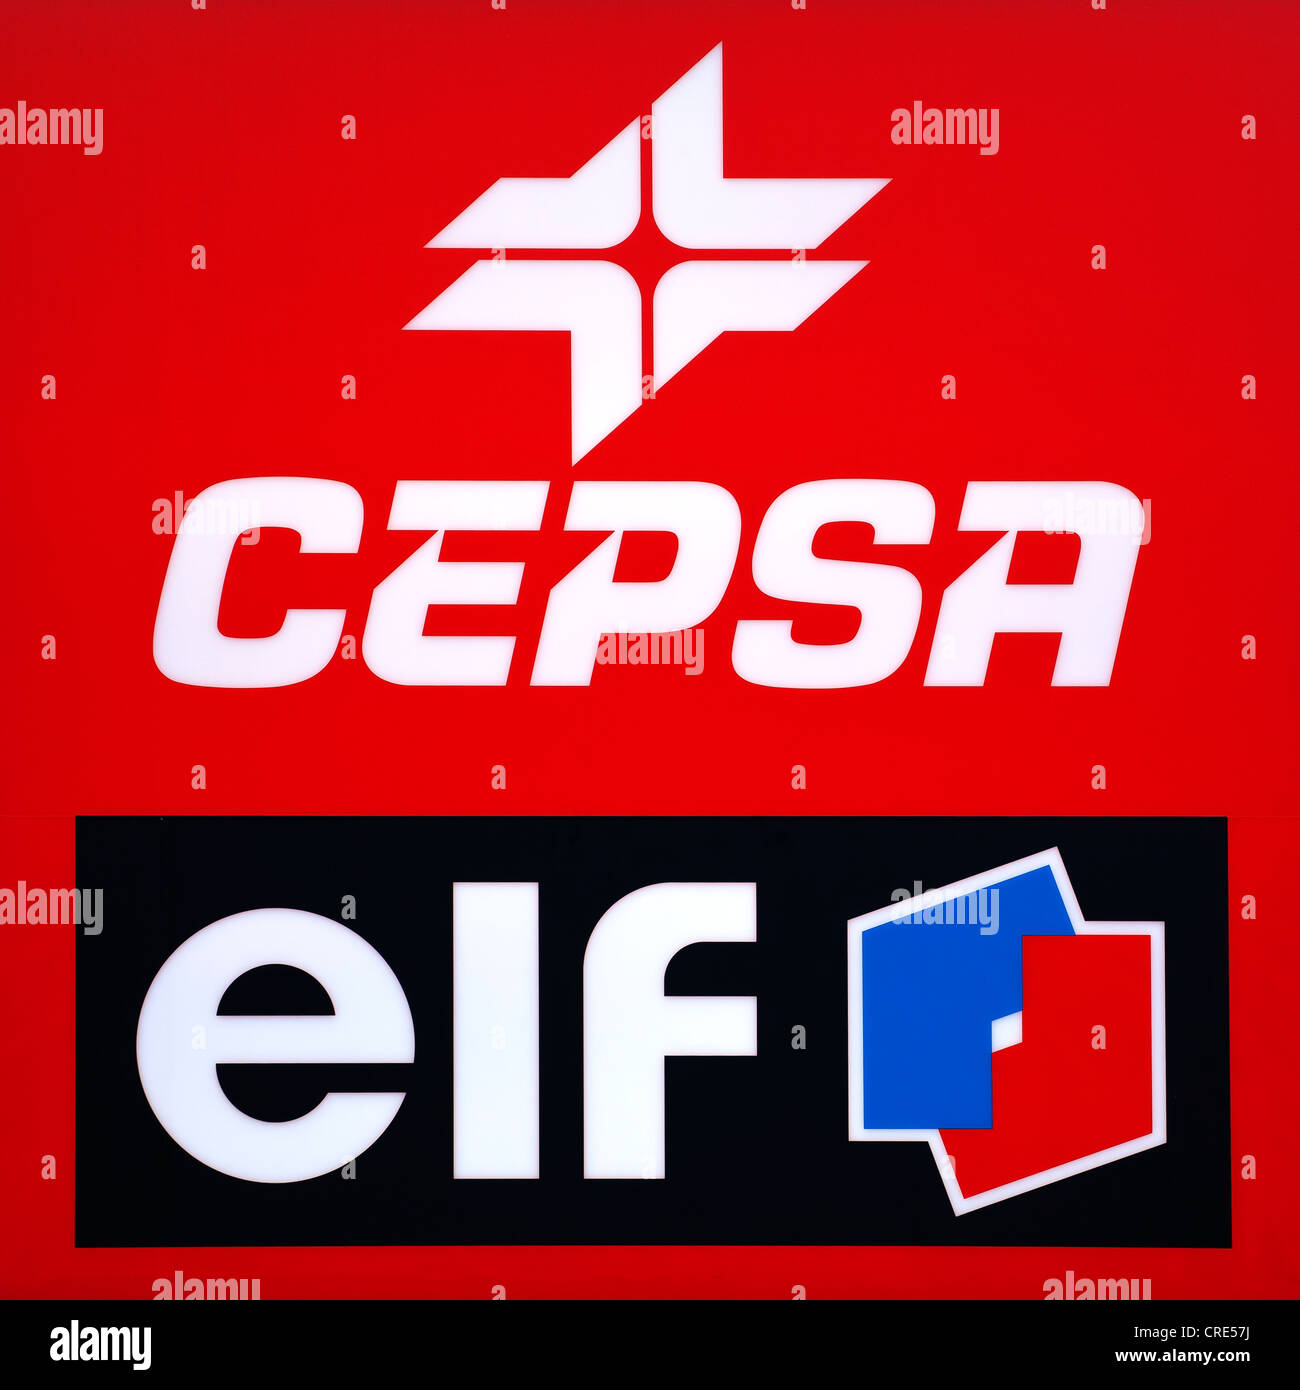 Logos y logotipos de la compañía petrolera española Cepsa, la Compañía Española de Petróleos, y la compañía petrolera francesa Elf Foto de stock